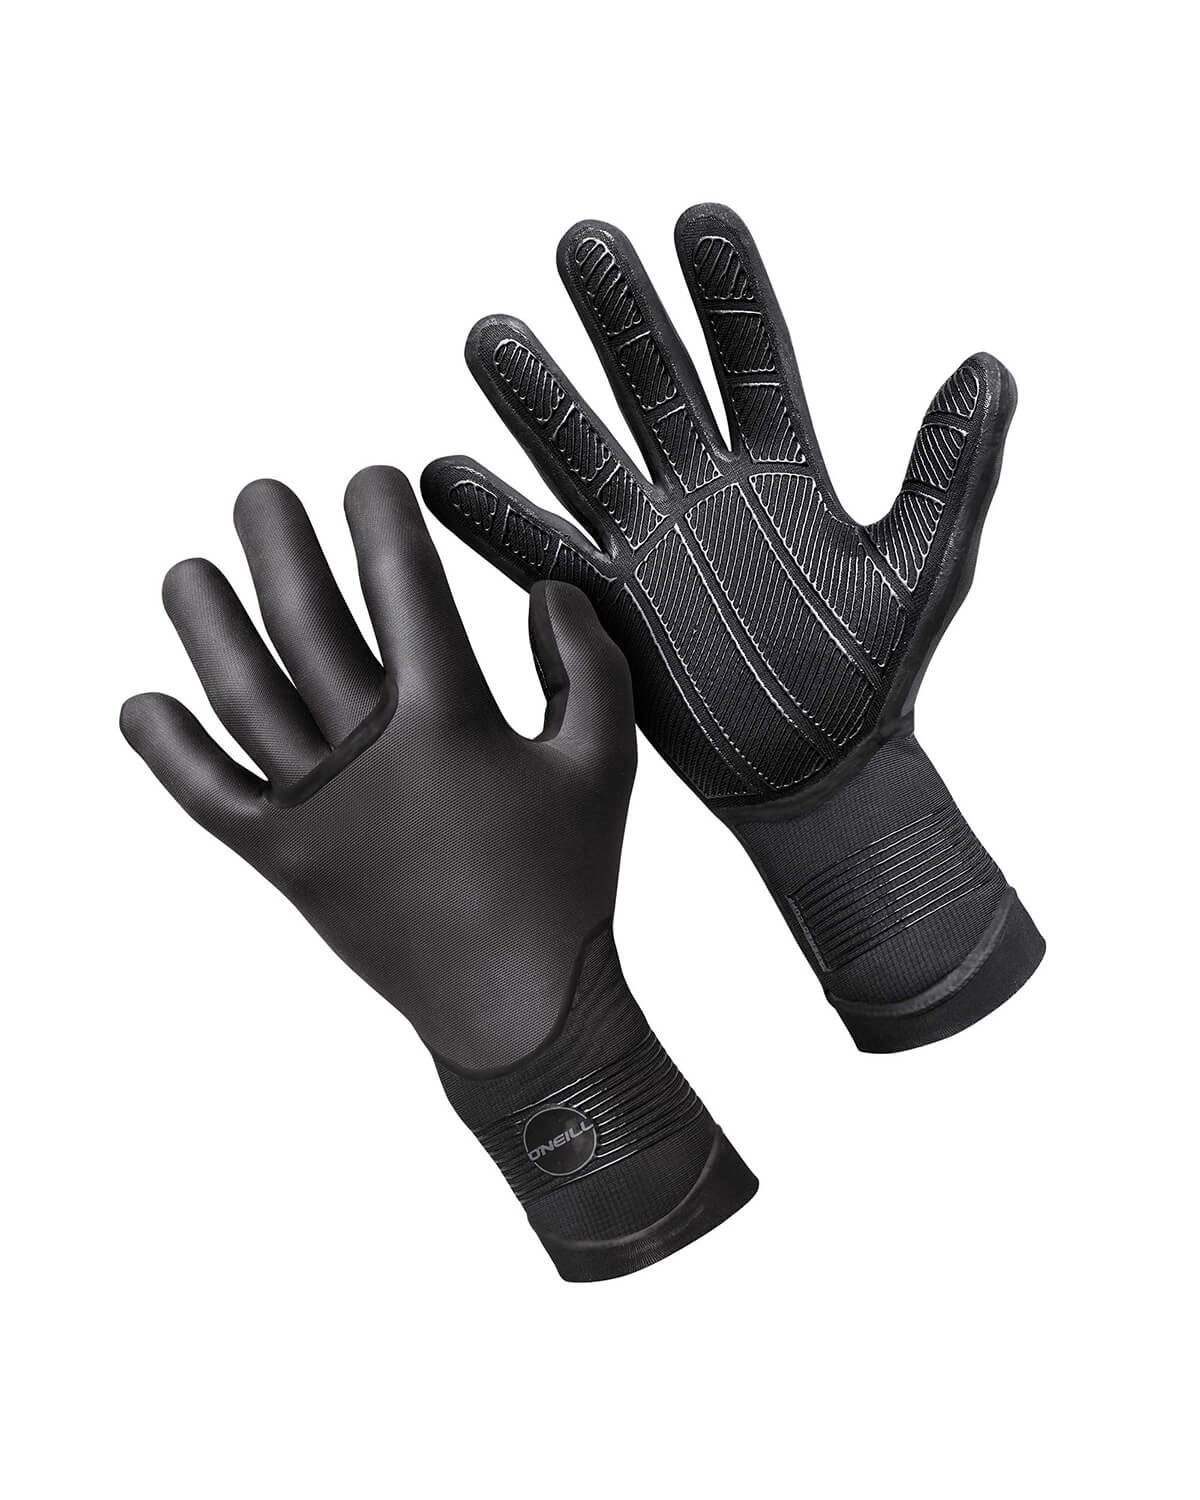 O'Neill Psycho Tech 5mm Gloves